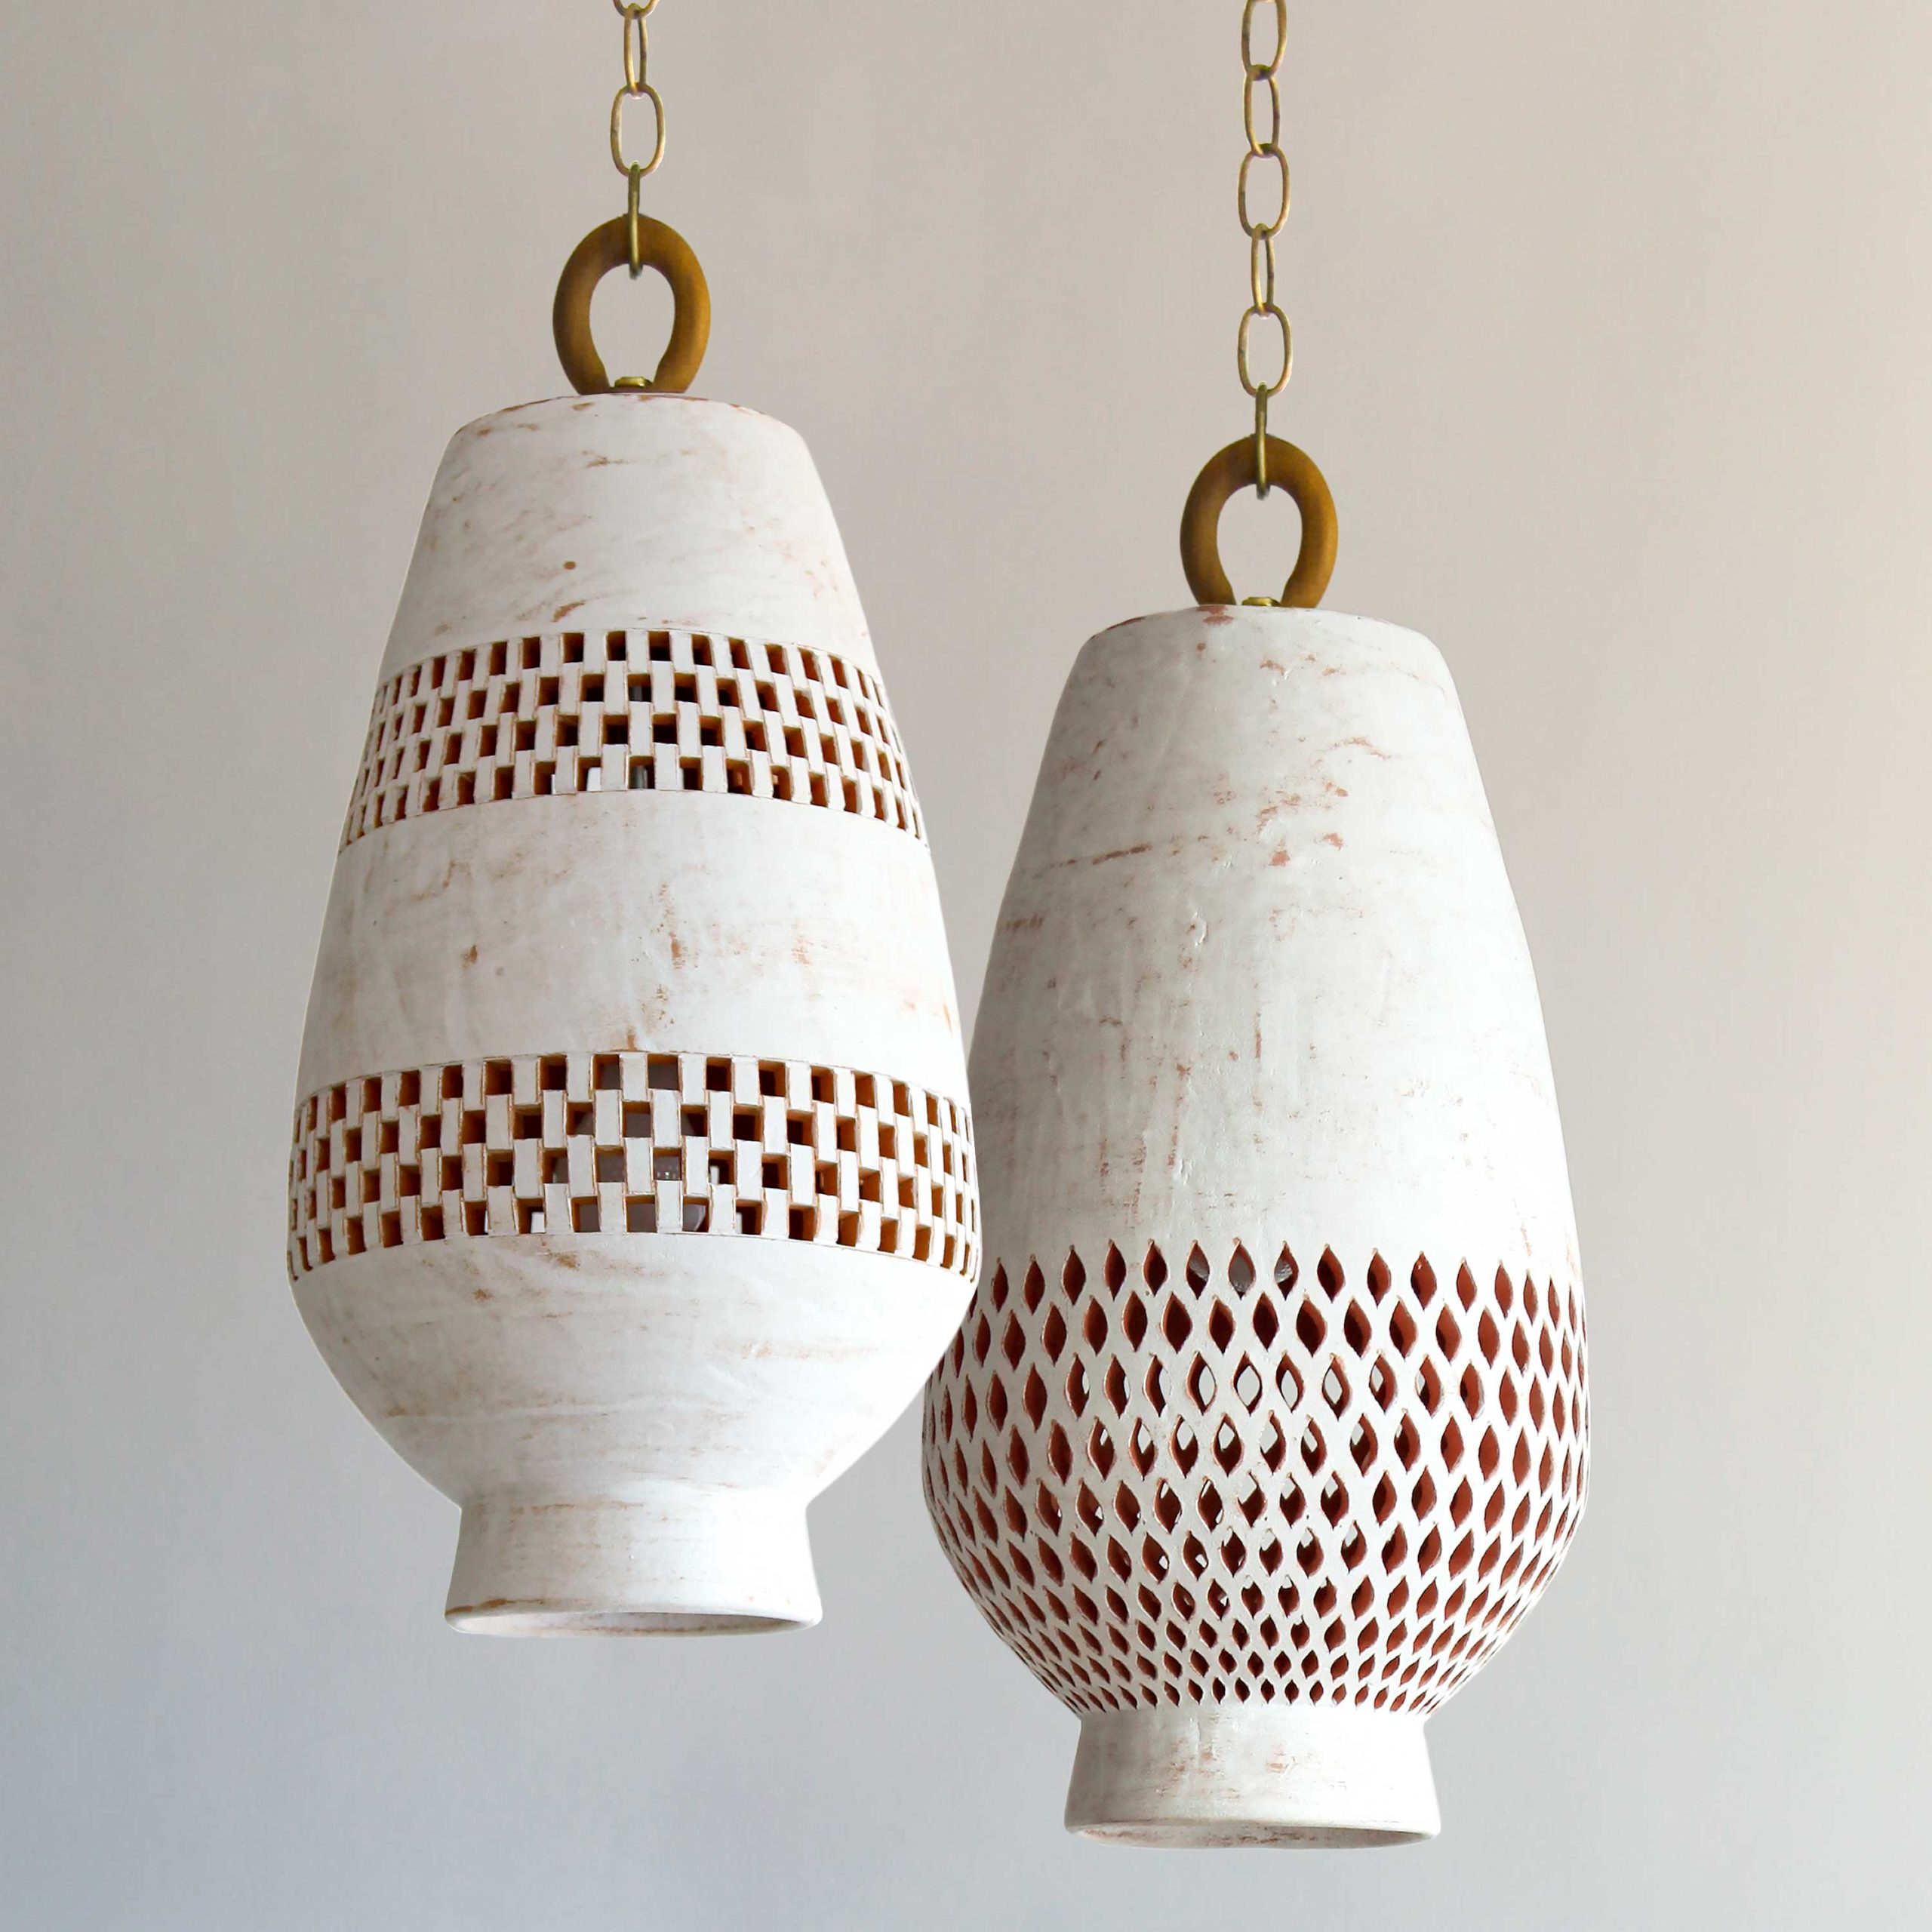 White ceramic pendant lights perfect for bedroom lighting